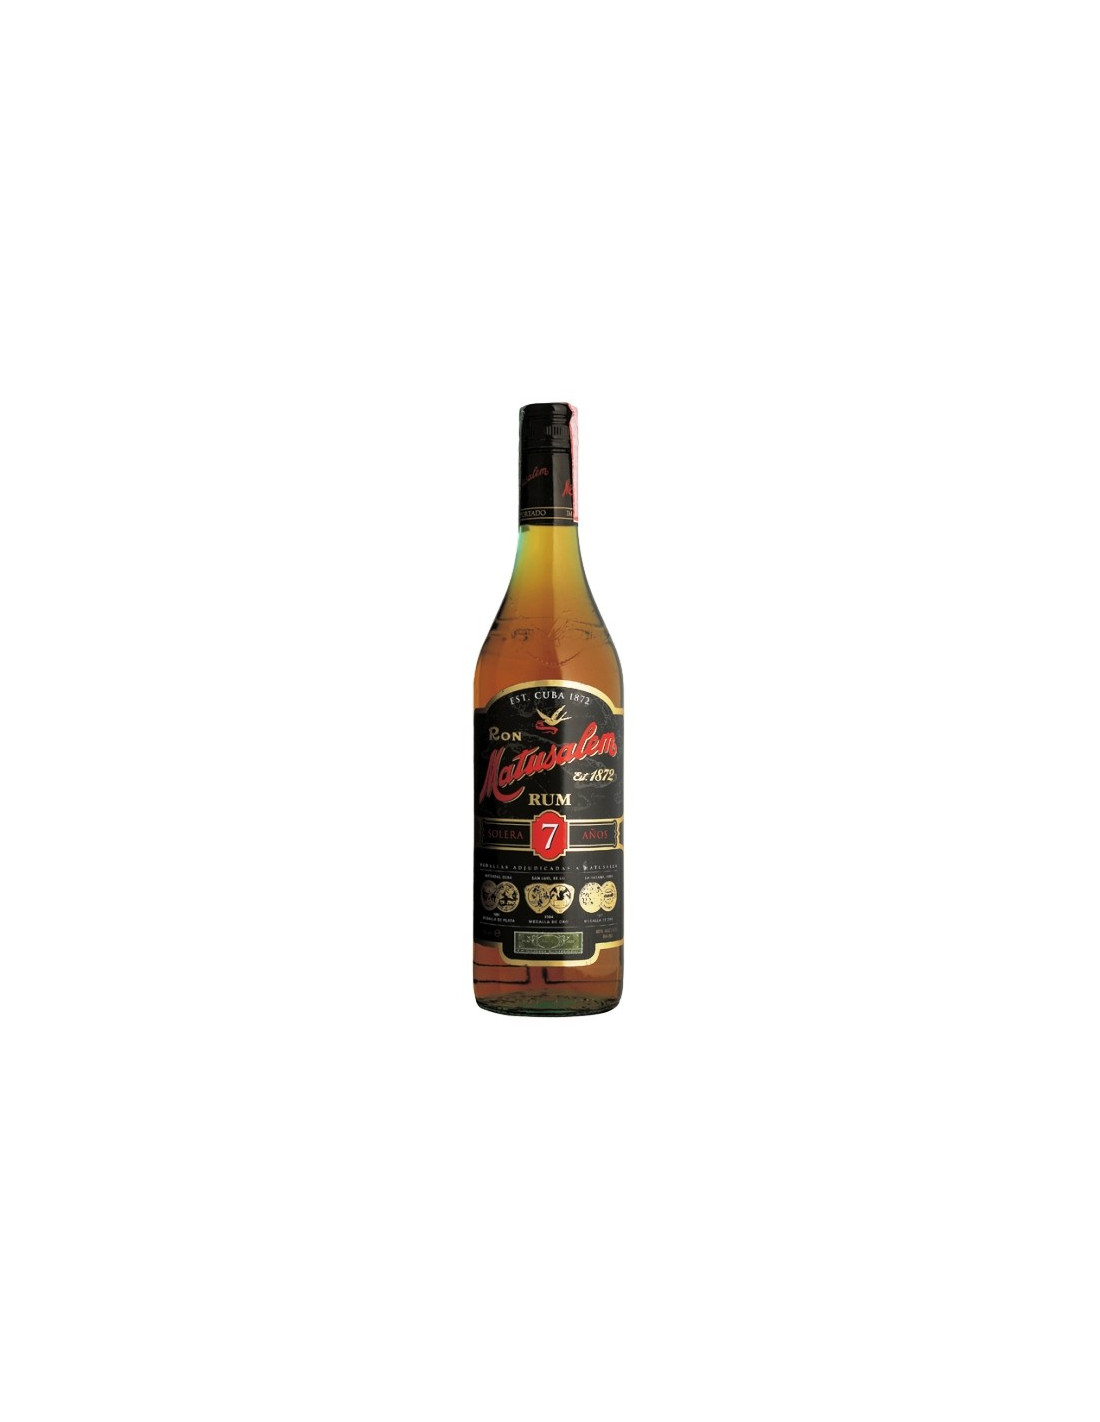 Rum Matusalem Solera 7. Buy on-line rum. Smartbites